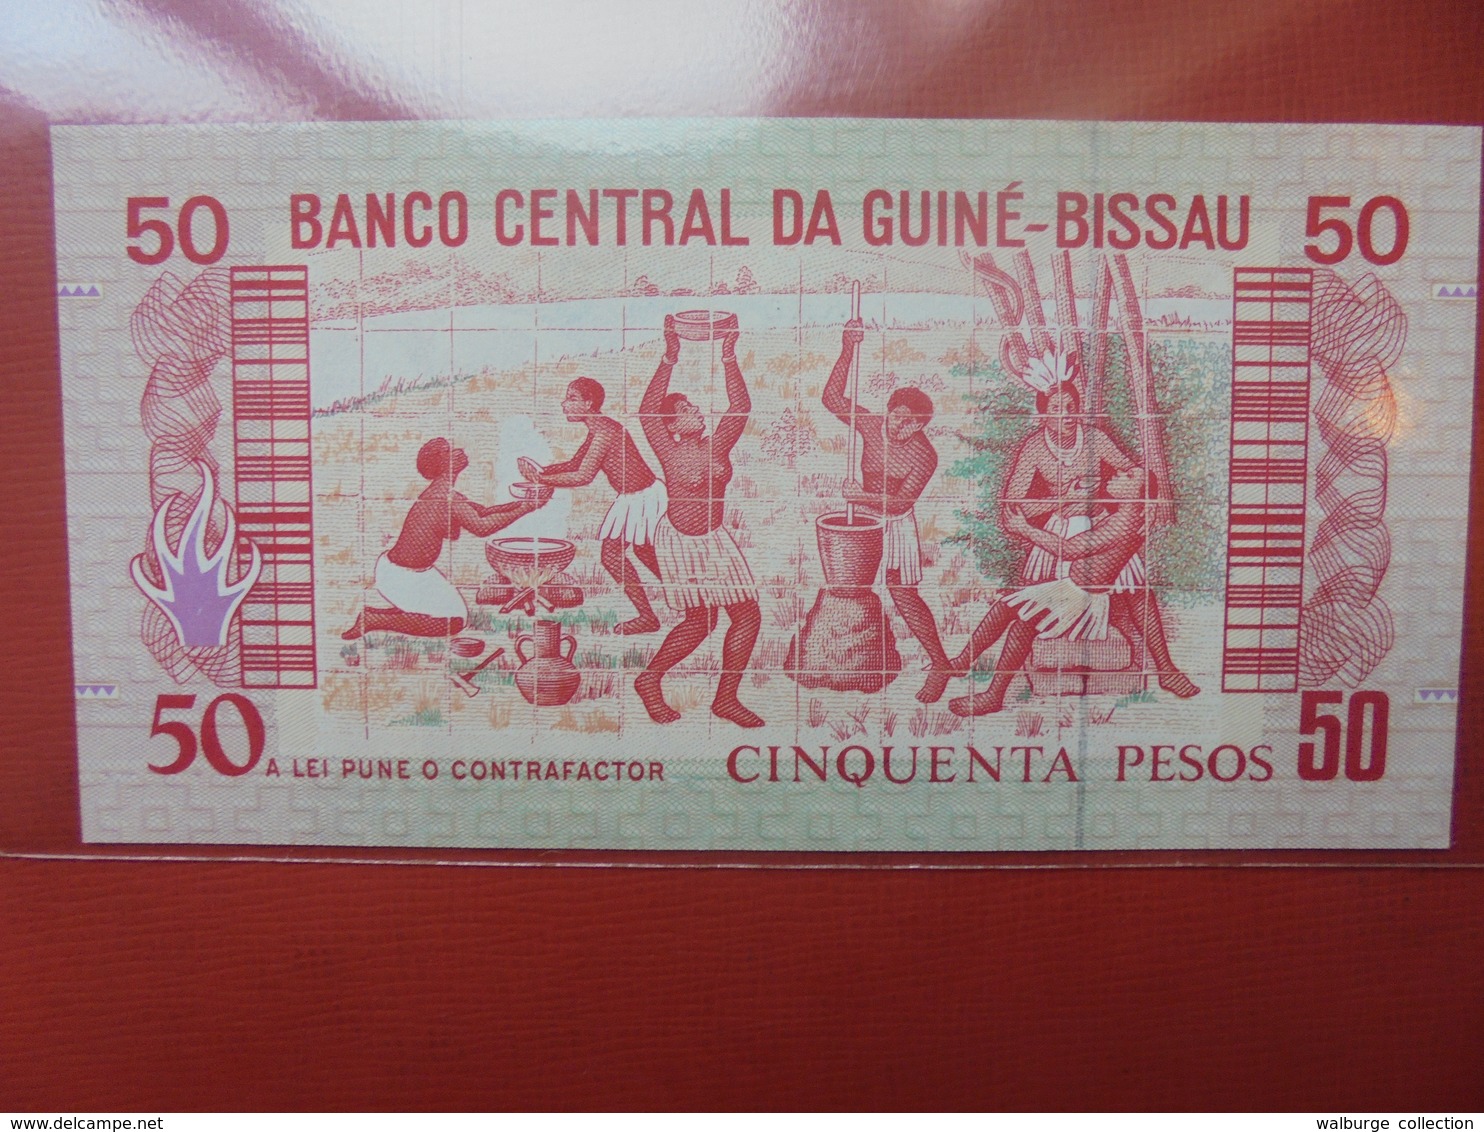 GUINEE-BISSAU 50 PESOS 1990 PEU CIRCULER/NEUF - Guinee-Bissau